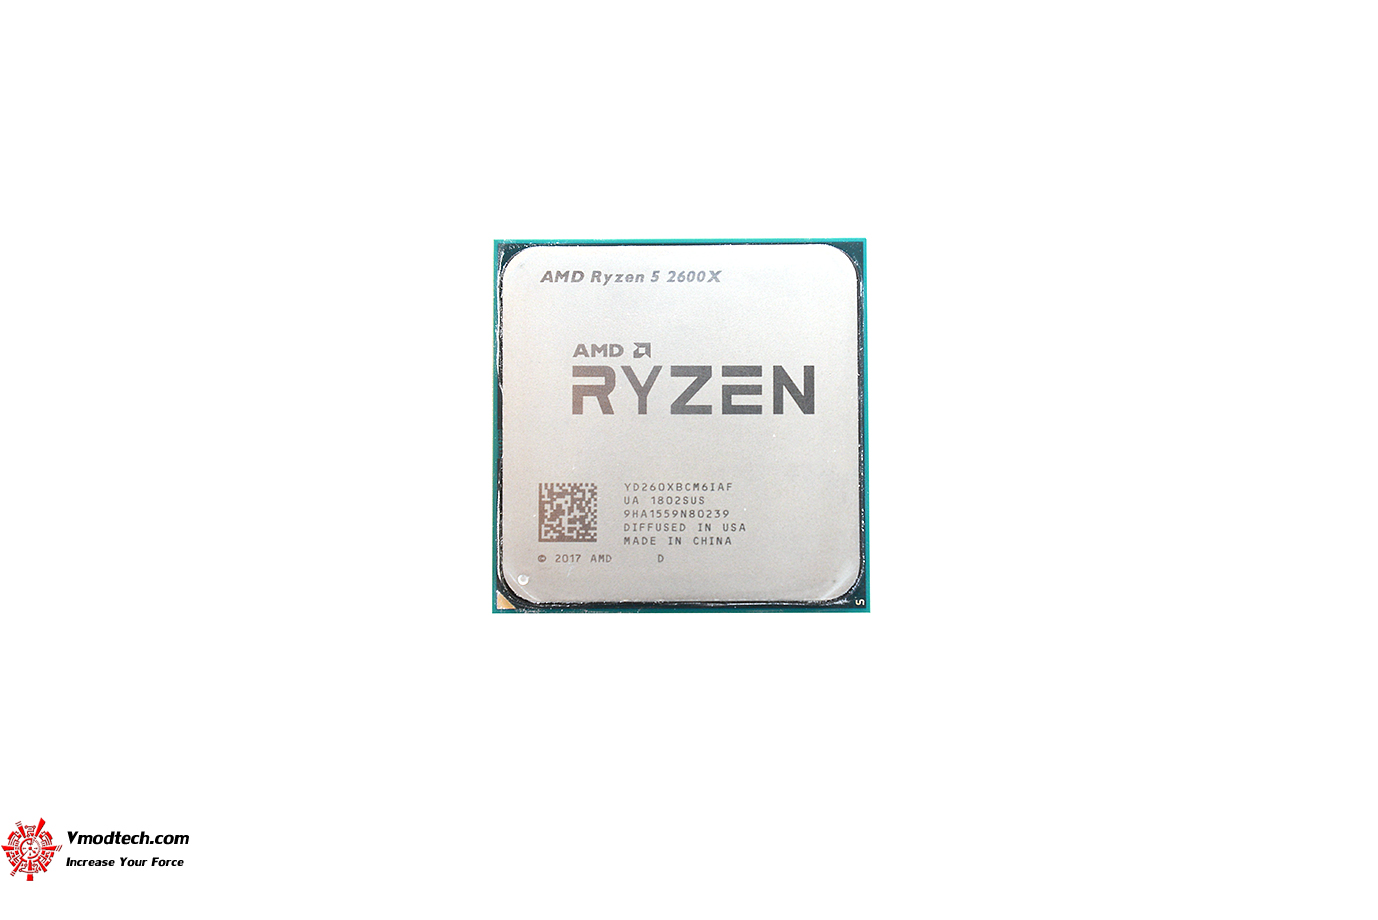 dsc 0962 AMD RYZEN 5 2600X PROCESSOR REVIEW